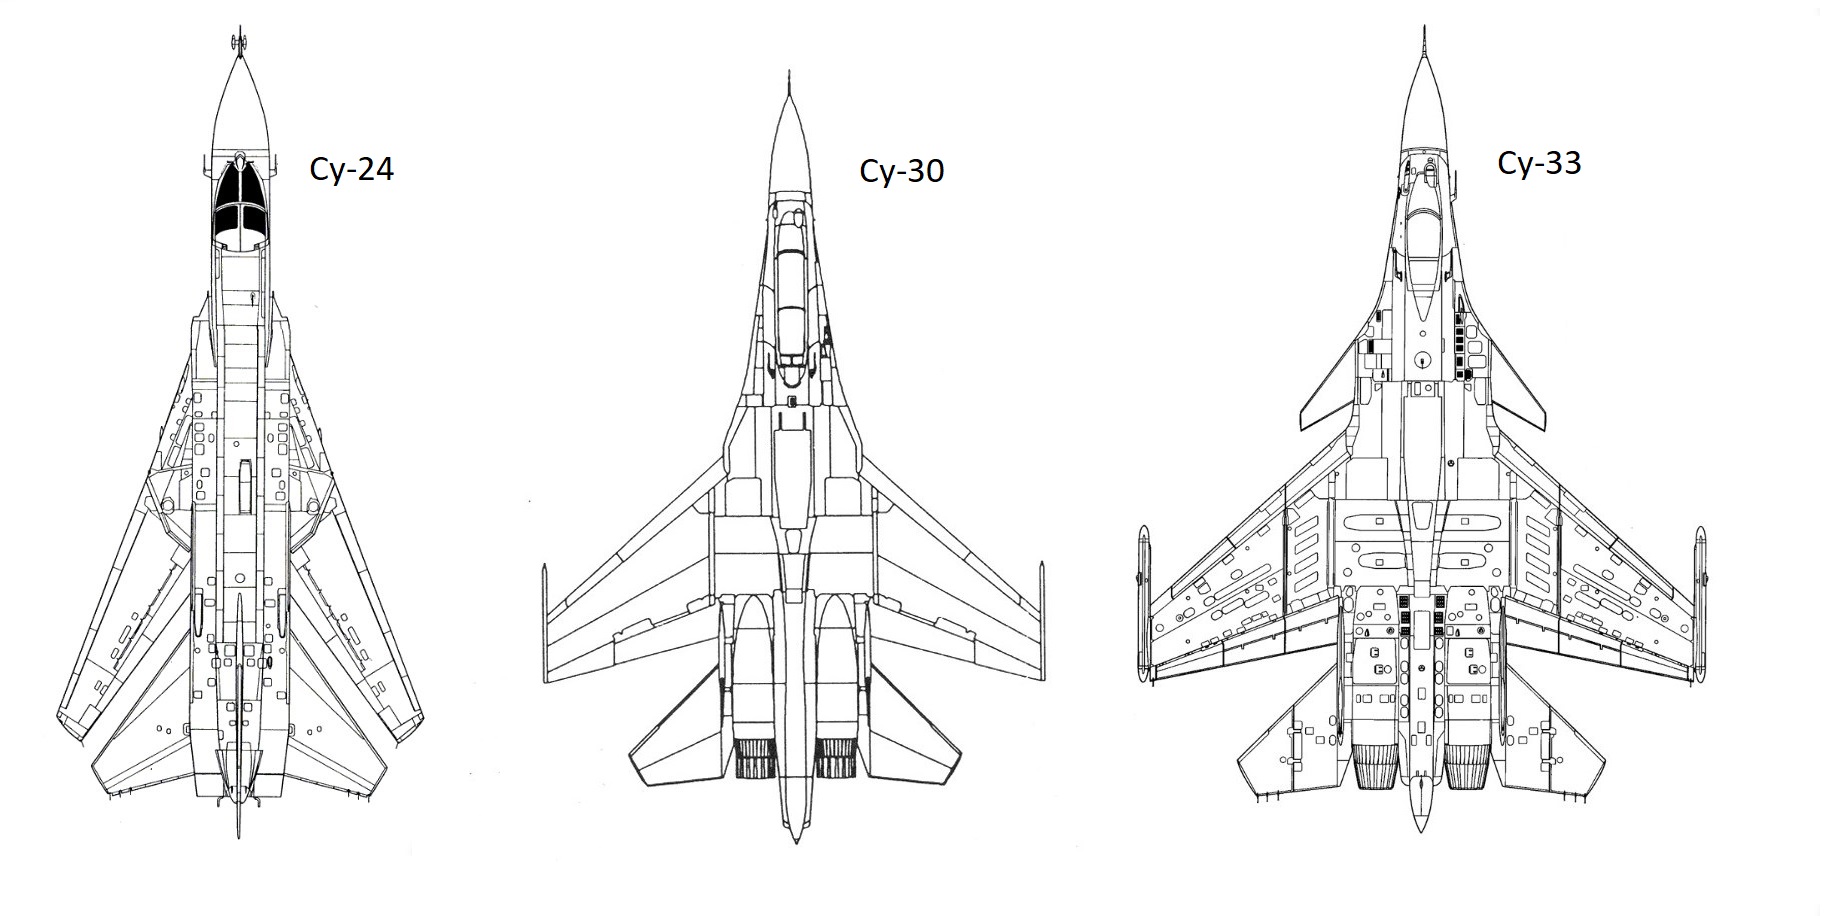 Схеми Су-24, Су-30 та Су-33